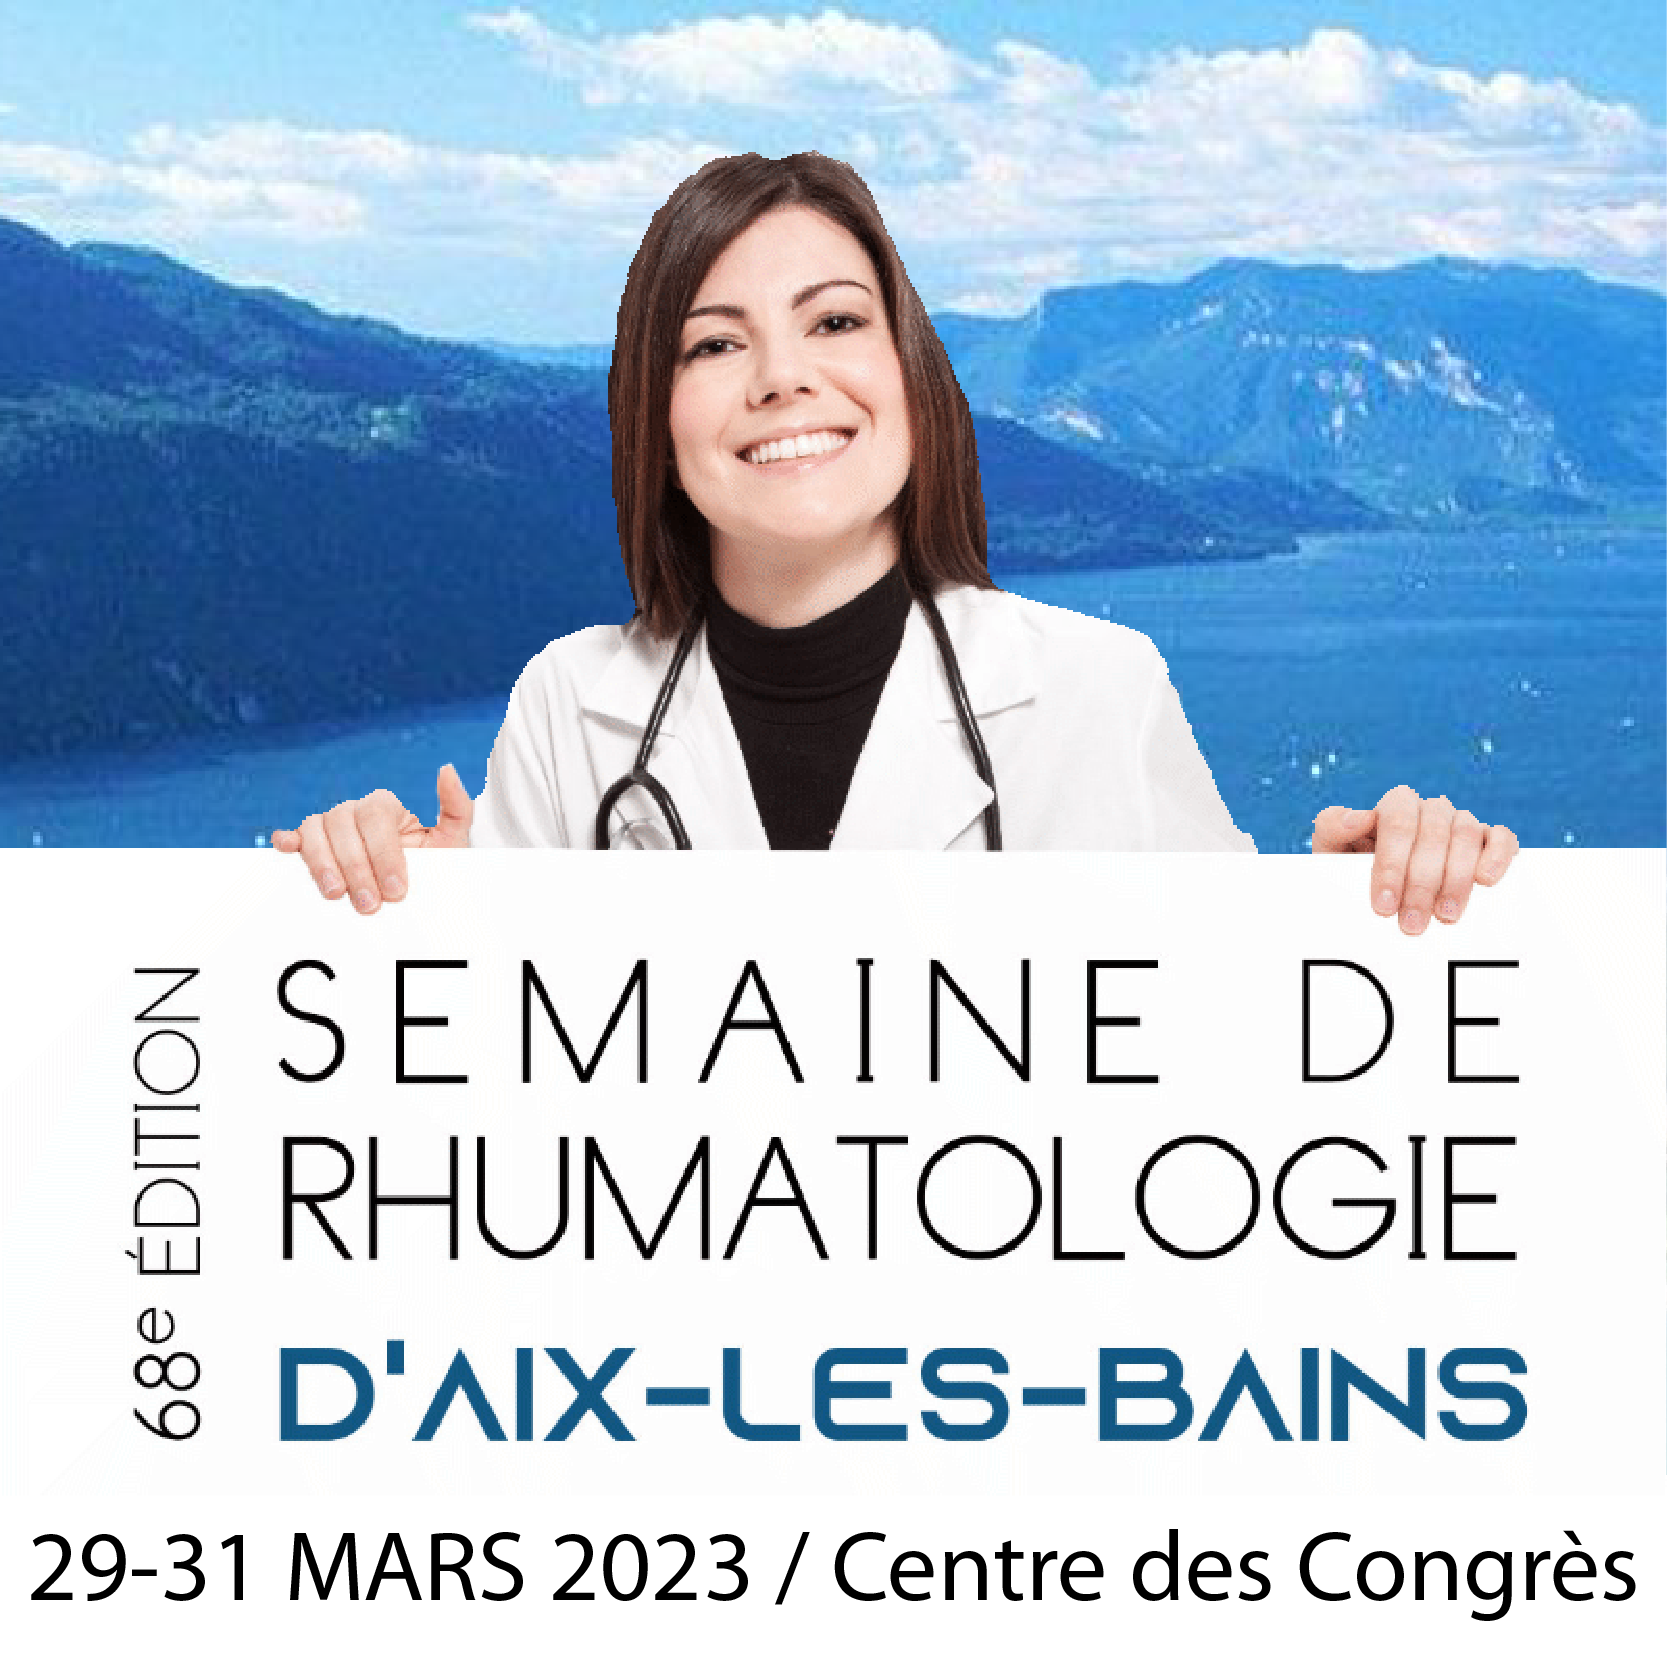 Semaine de Rhumatologie d’Aix-les-Bains 2023